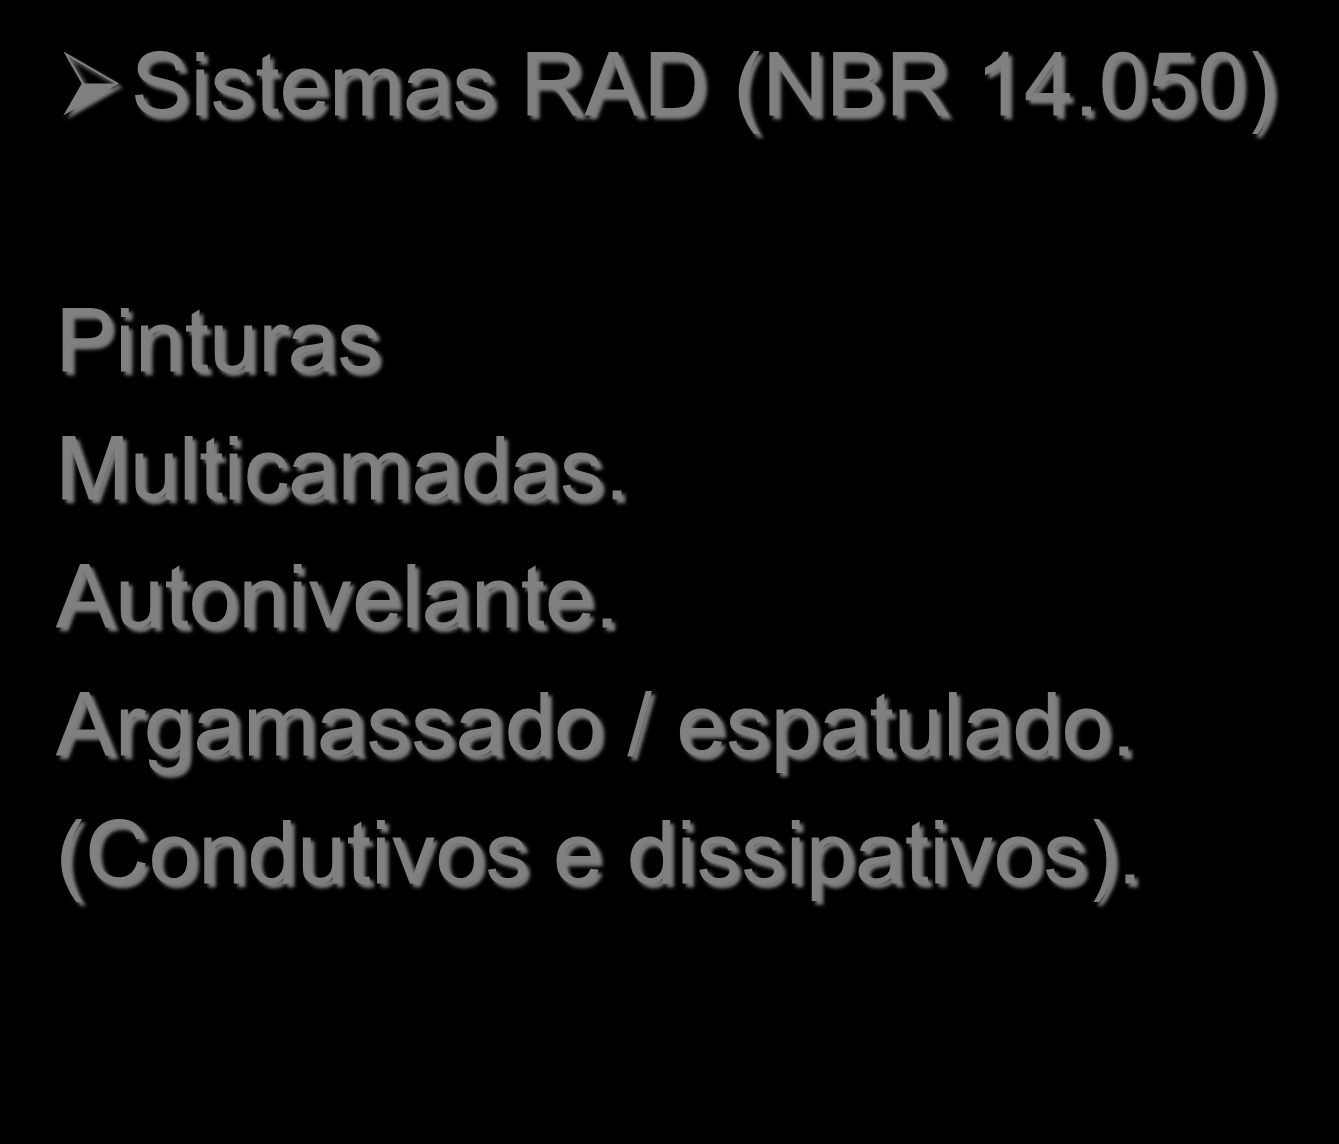 Procedimentos de execução do RAD Sistemas RAD (NBR 14.